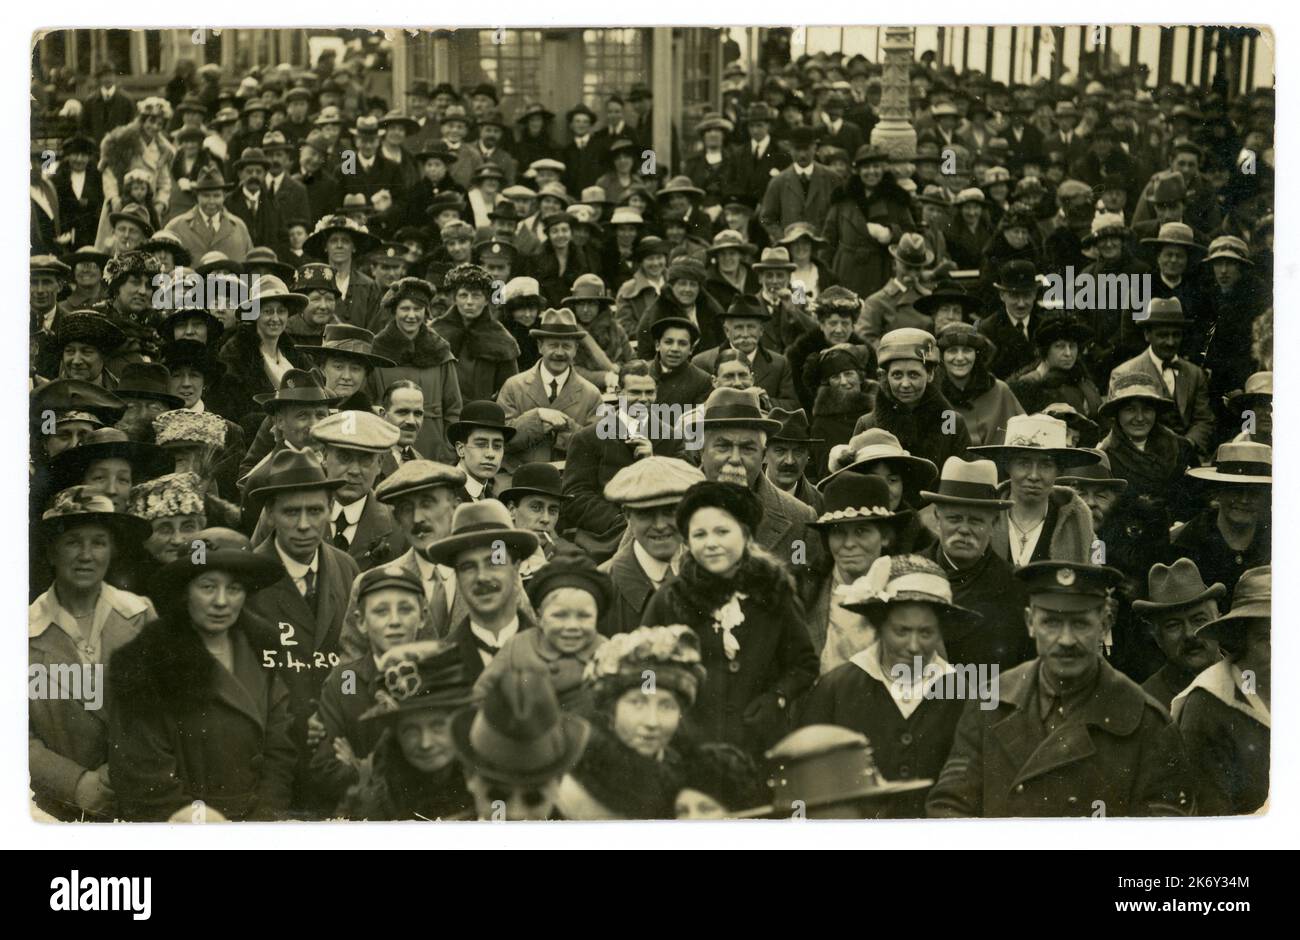 La folla originaria delle vacanze della classe operaia degli anni '1920 risale al 5 aprile 1920, località balneare britannica, con molti personaggi e mode, tra cui cappellini piatti e cappelli homburg. Foto retro del mare del Regno Unito. Foto Stock